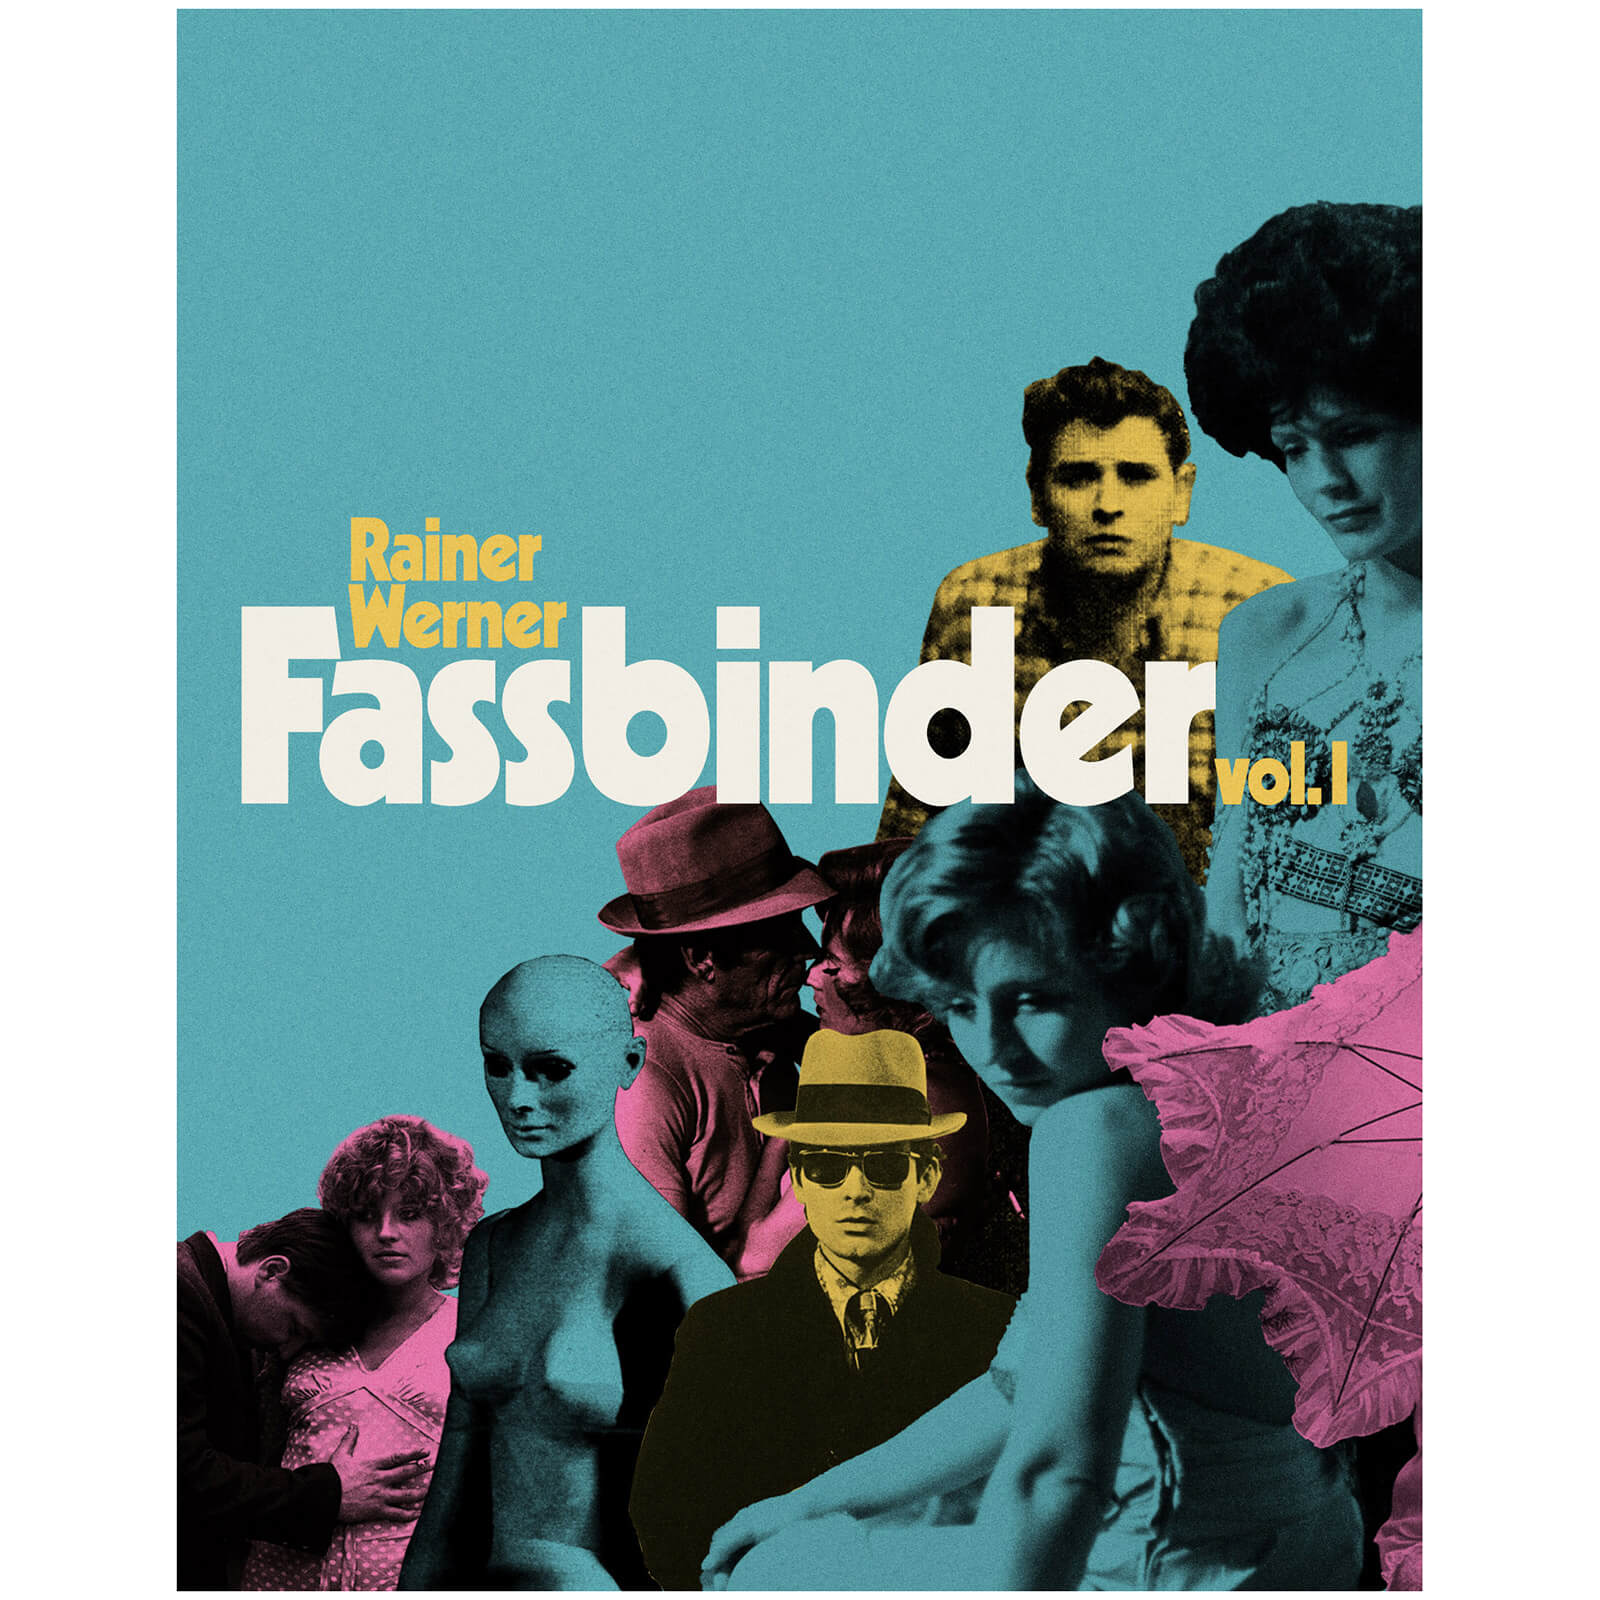 The Rainer Werner Fassbinder Vol 1 von Arrow Video